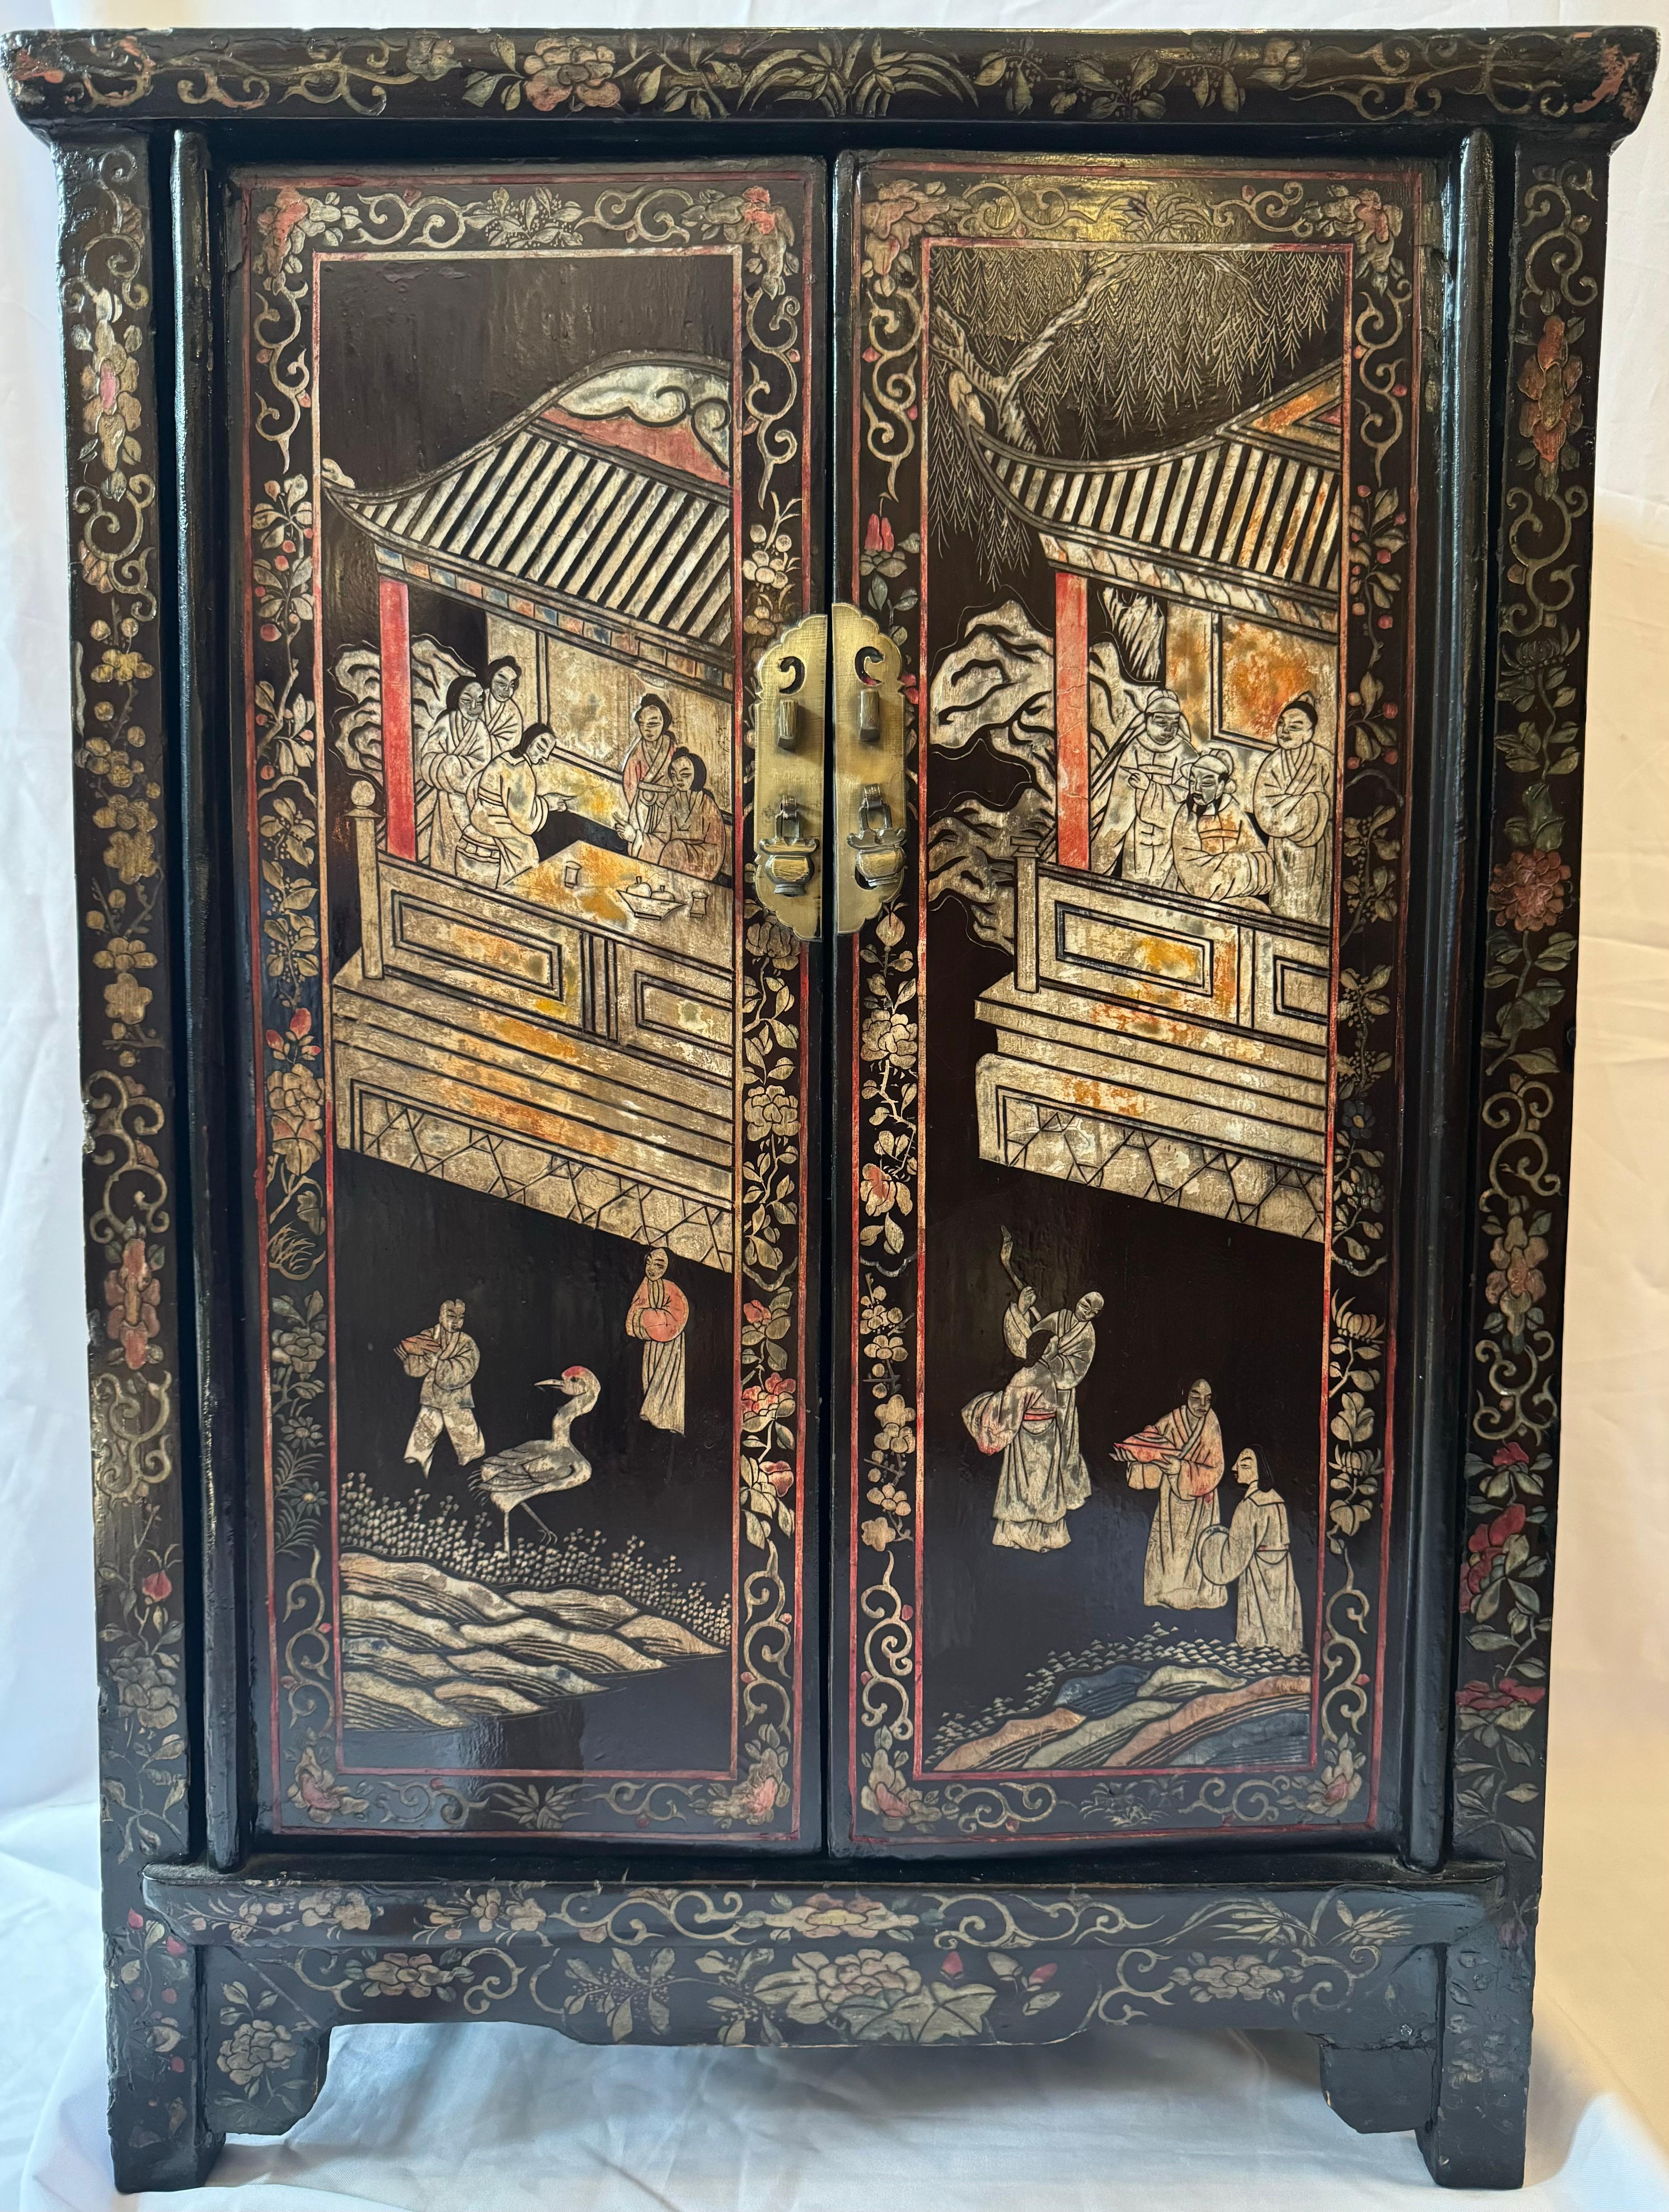 Dieser chinesische Chinoiserie-Lackschrank aus dem 19. Jahrhundert ist ein prächtiges Zeugnis für die anhaltende Anziehungskraft der Chinoiserie-Bewegung, die Europa im 17. Als die Faszination der Europäer für die asiatische Kunst und Kultur ihren